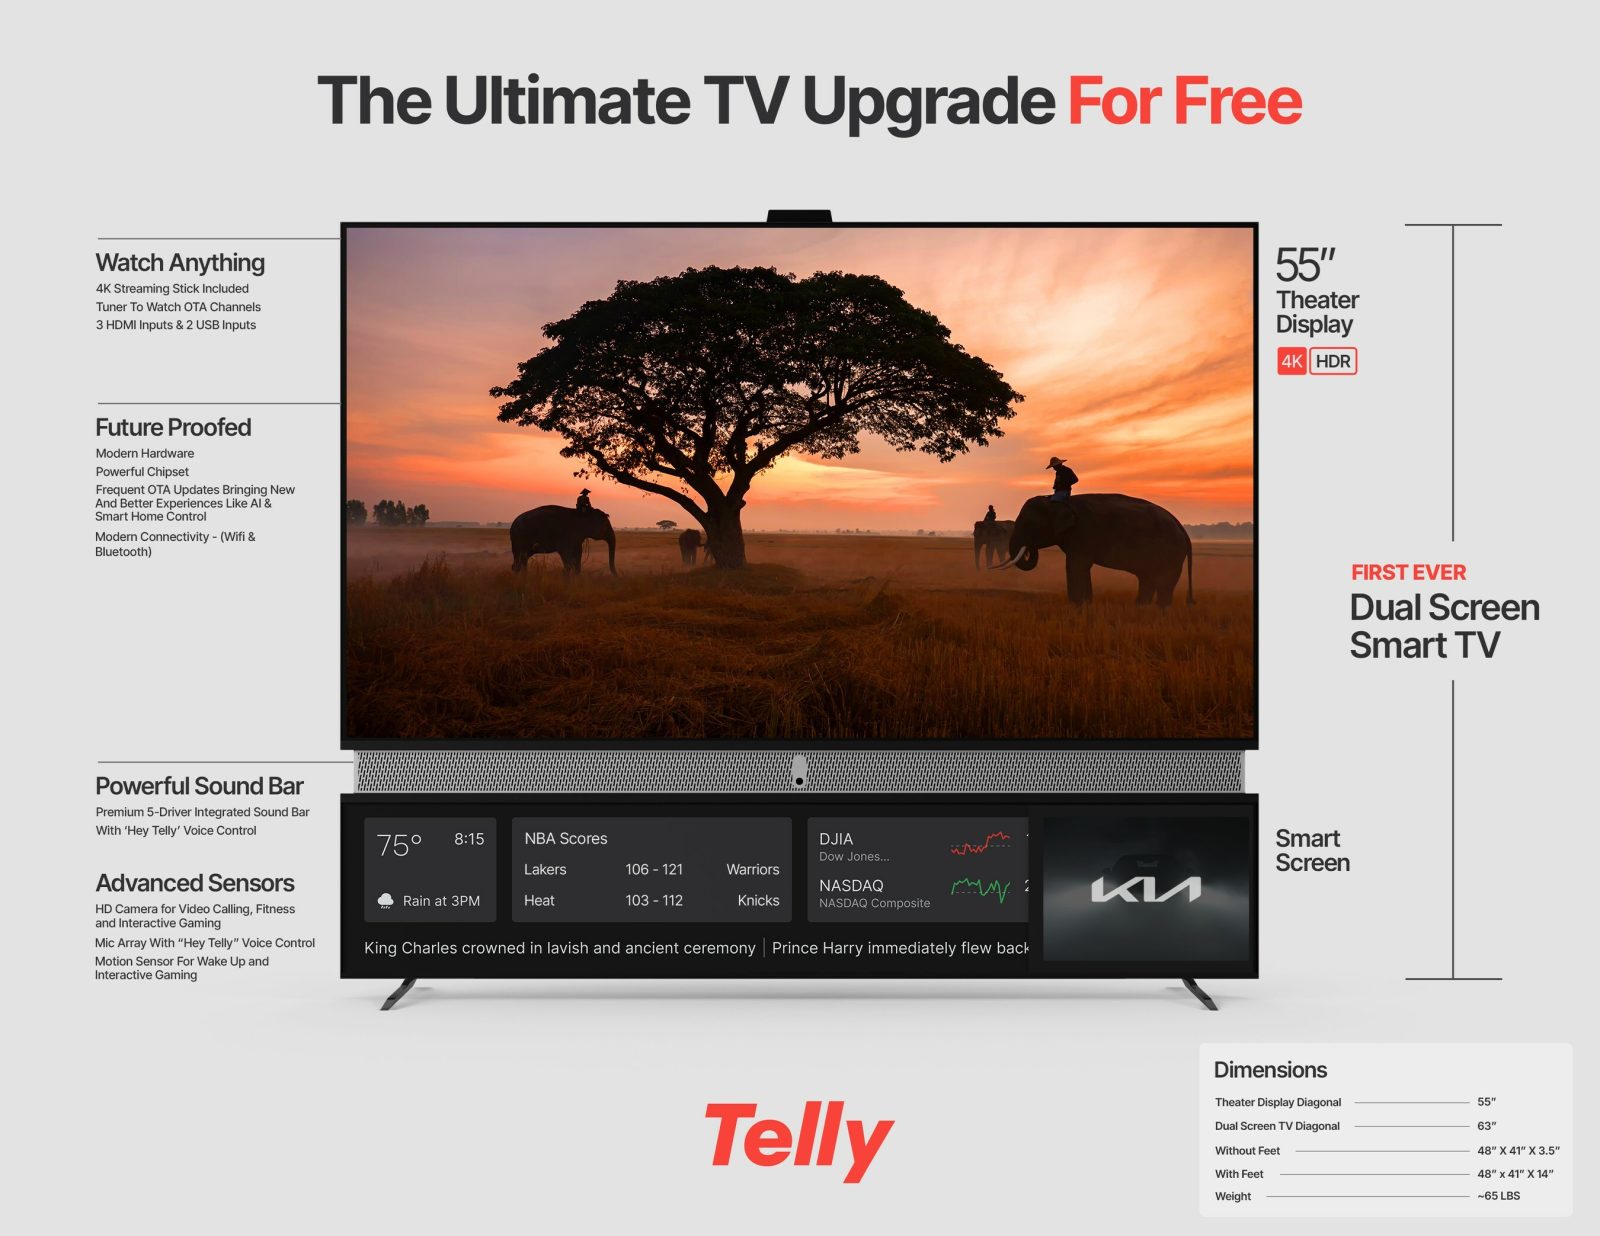 Telly - darmowy telewizor z podwójnym ekranem, który ożywa dzięki reklamom